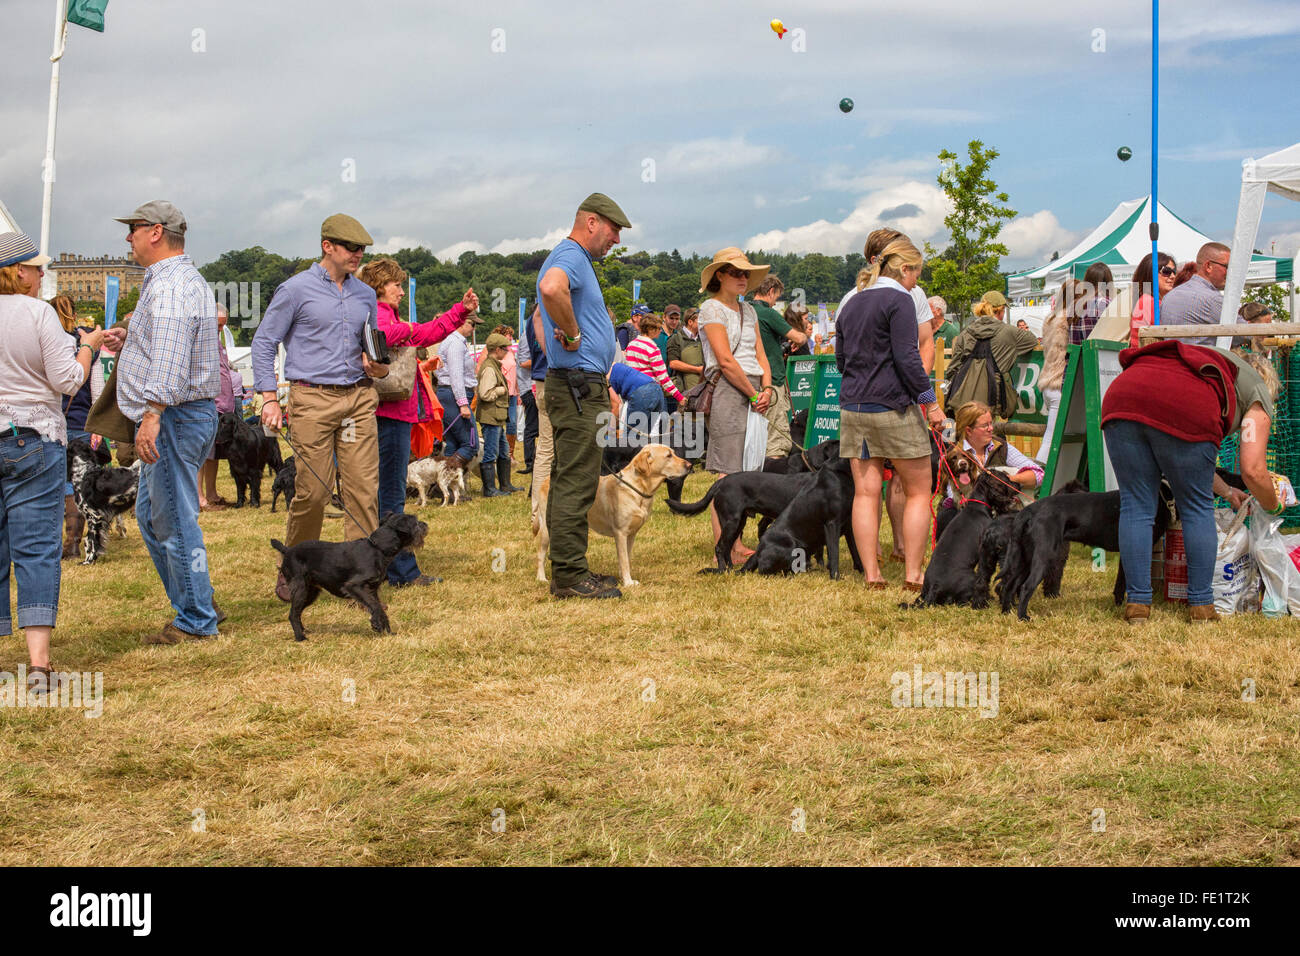 Los perros esperando una se afanan en una feria en Harewood House en Yorkshire, Reino Unido Foto de stock